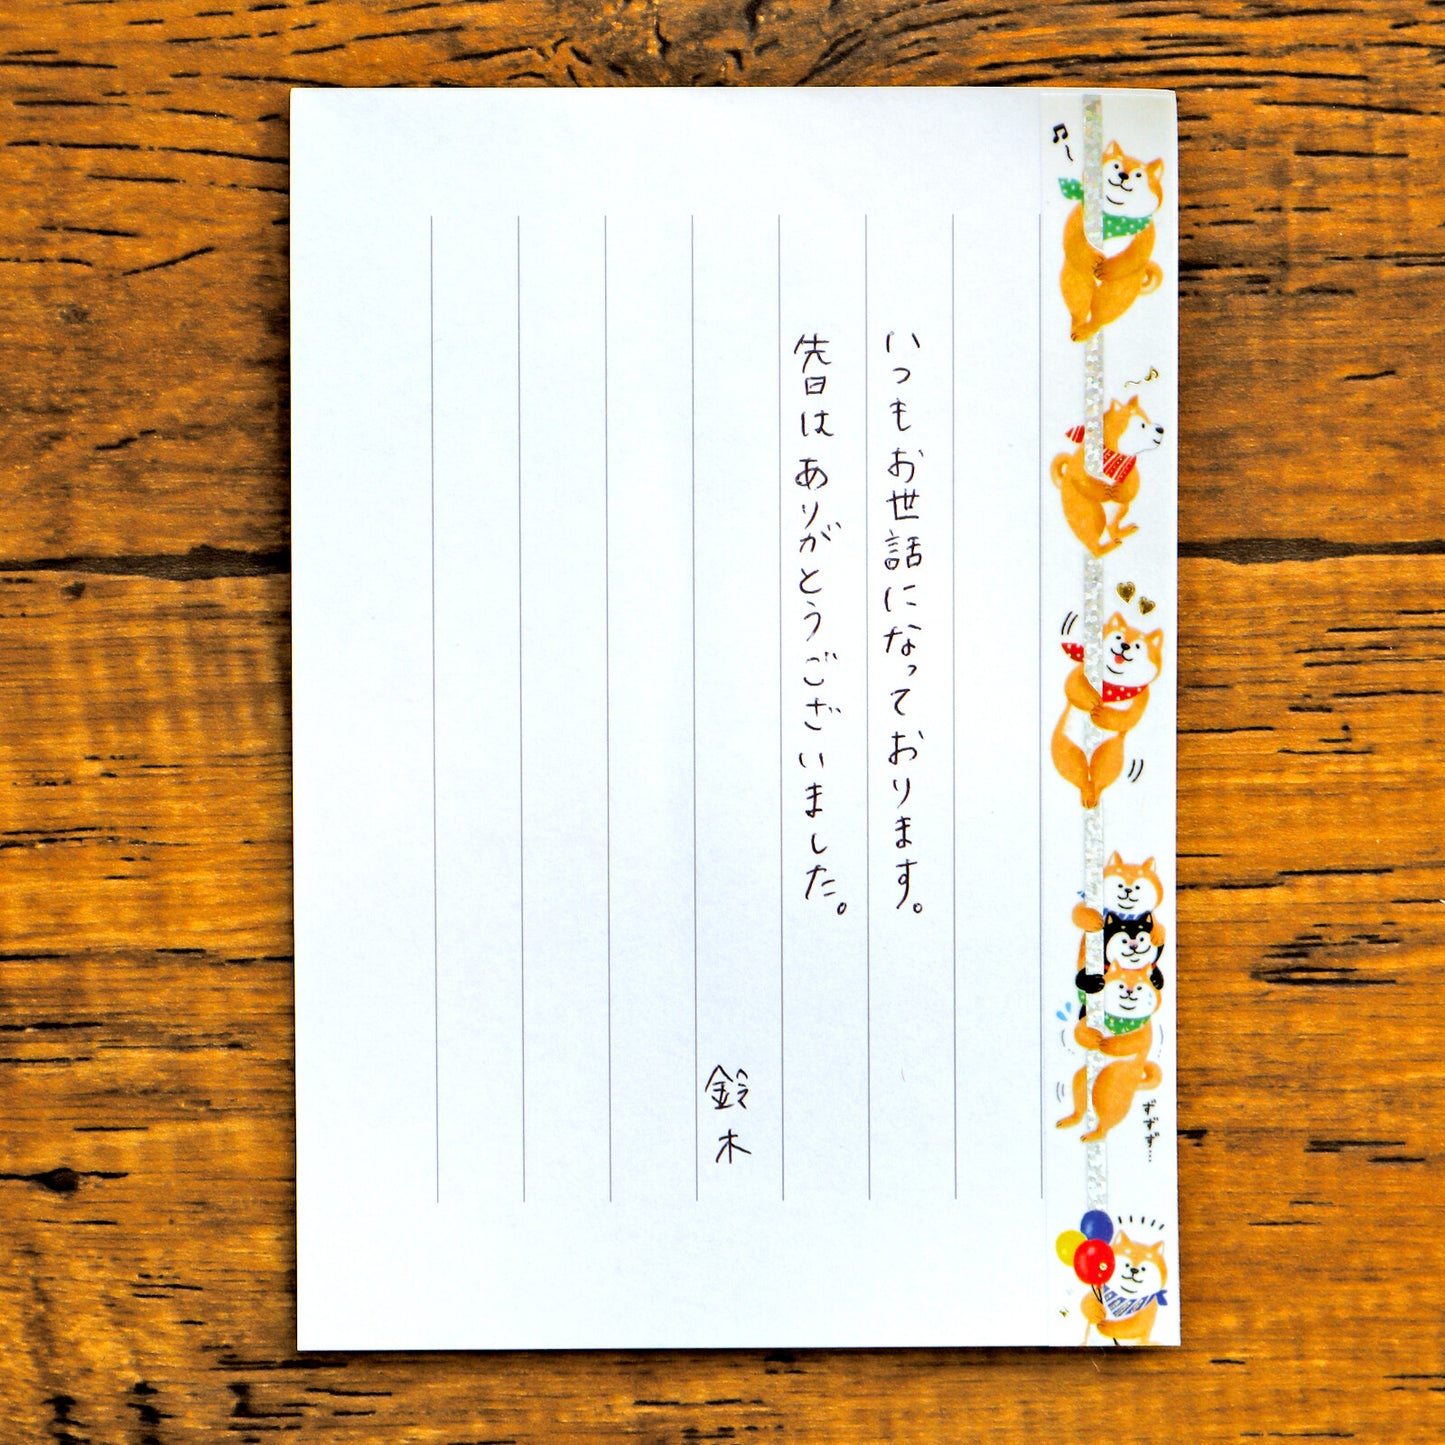 Shiba Inu Dog Glitter Washi Tape Masking Tape